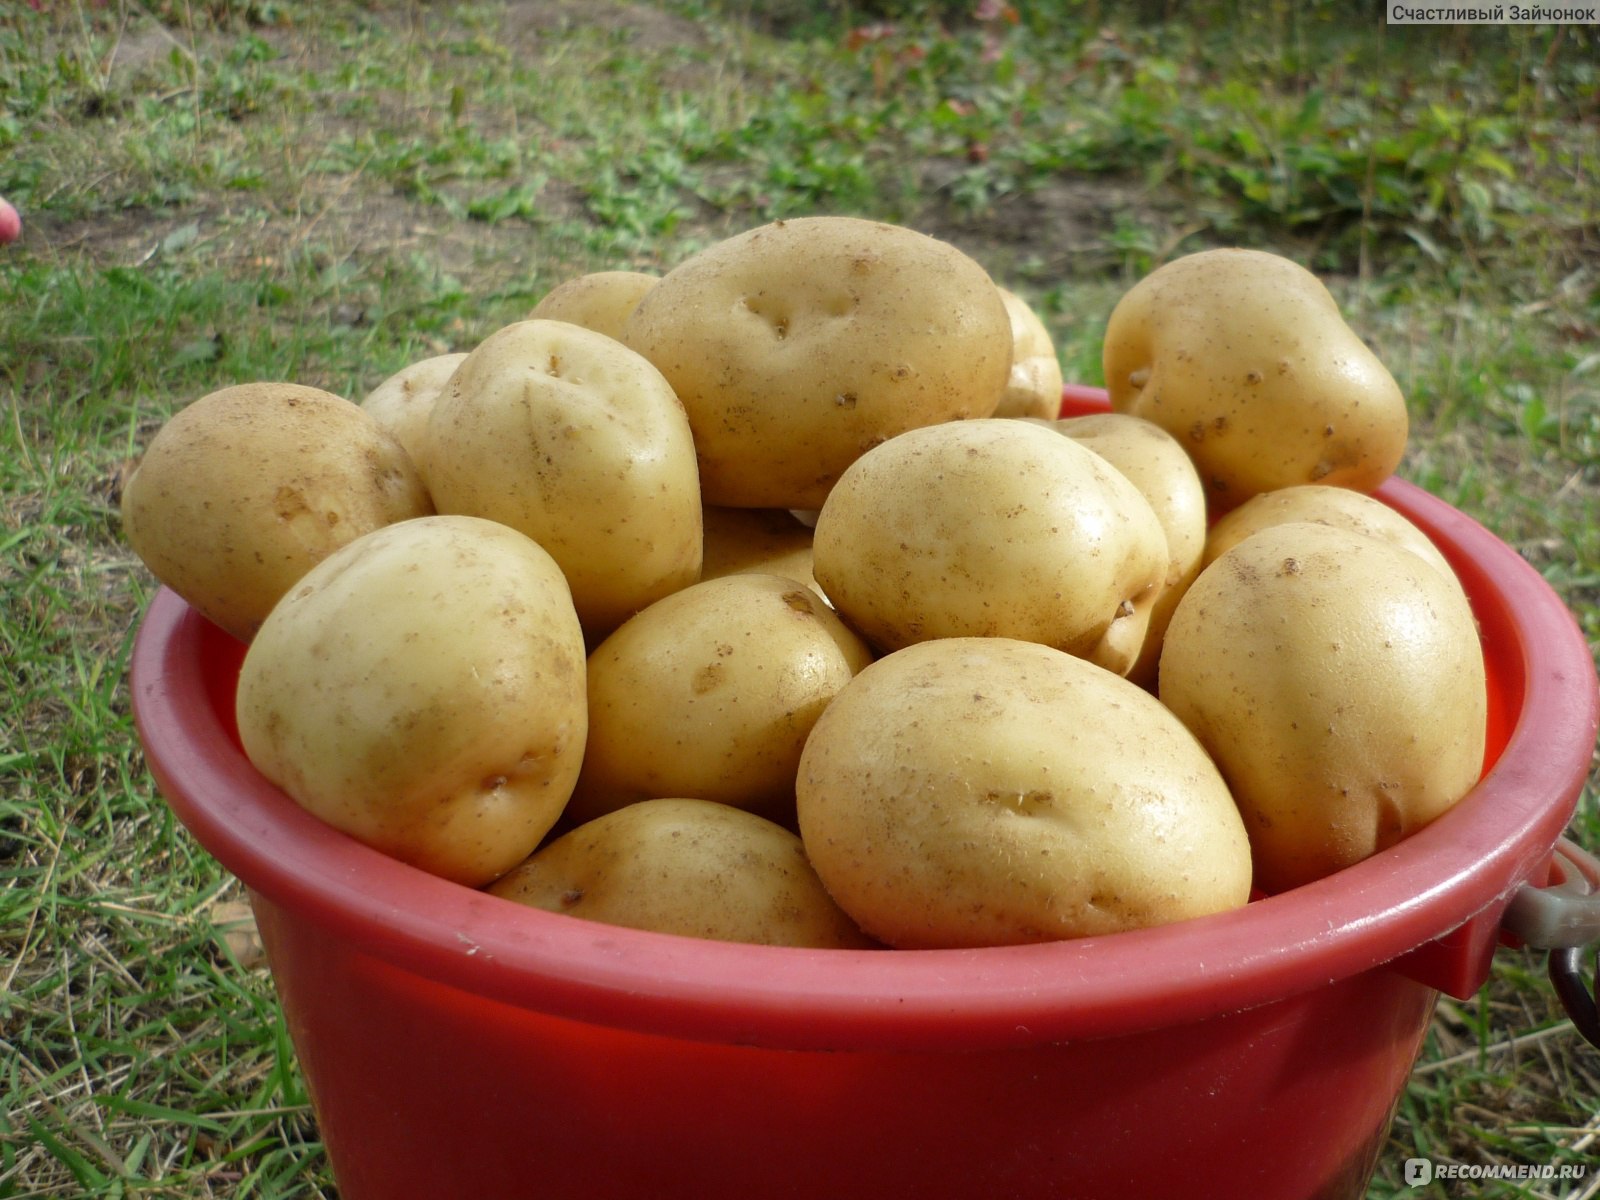 Картофель сорт Гала - «Картофель Гала обосновался в нашем огороде! Описаниесорта, характеристики, вкусовые качества. Фото»